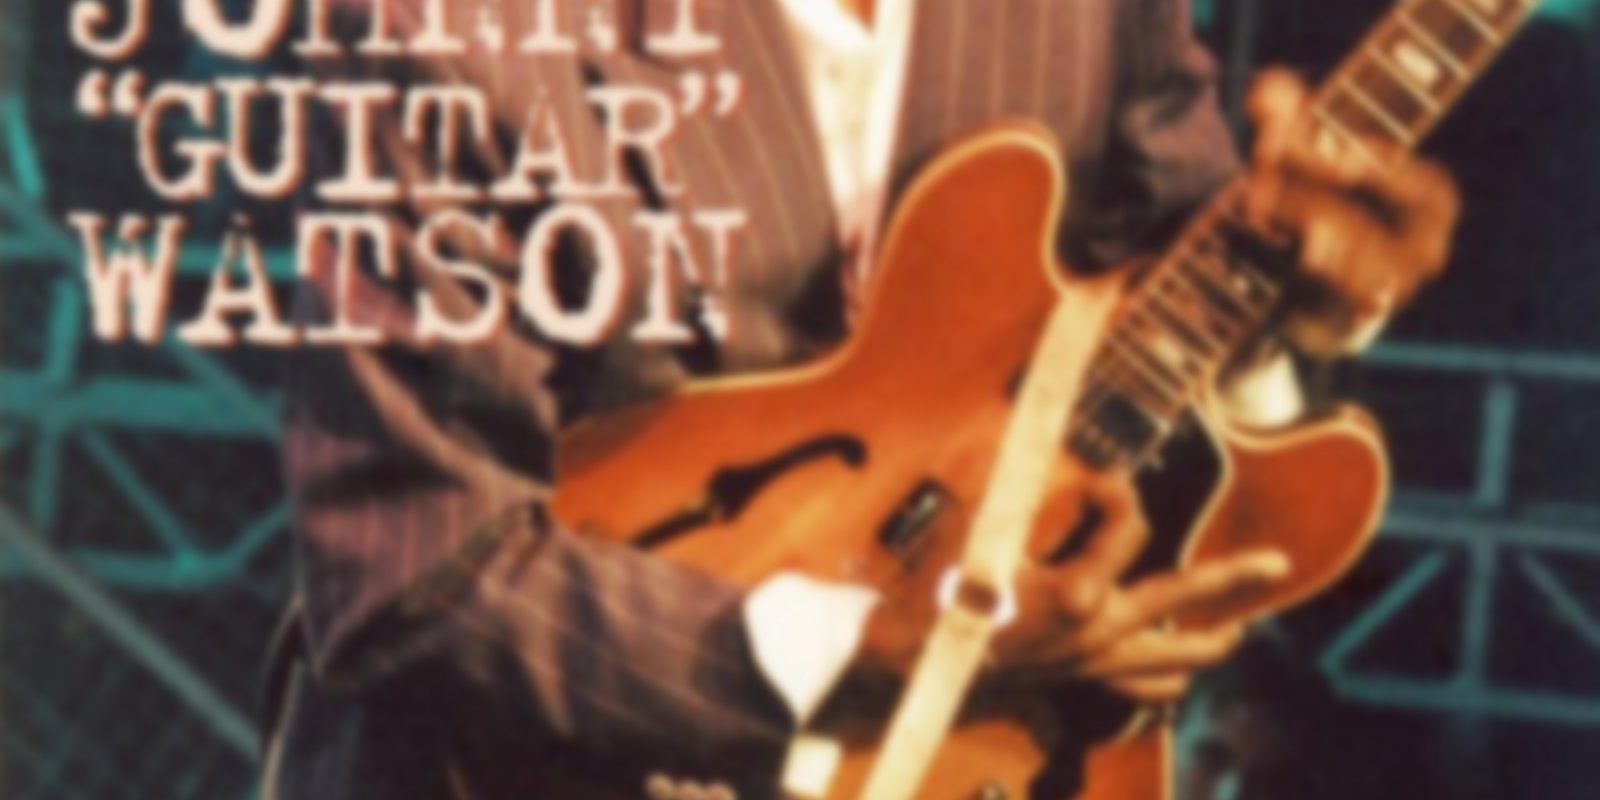 Johnny 'Guitar' Watson - In Concert